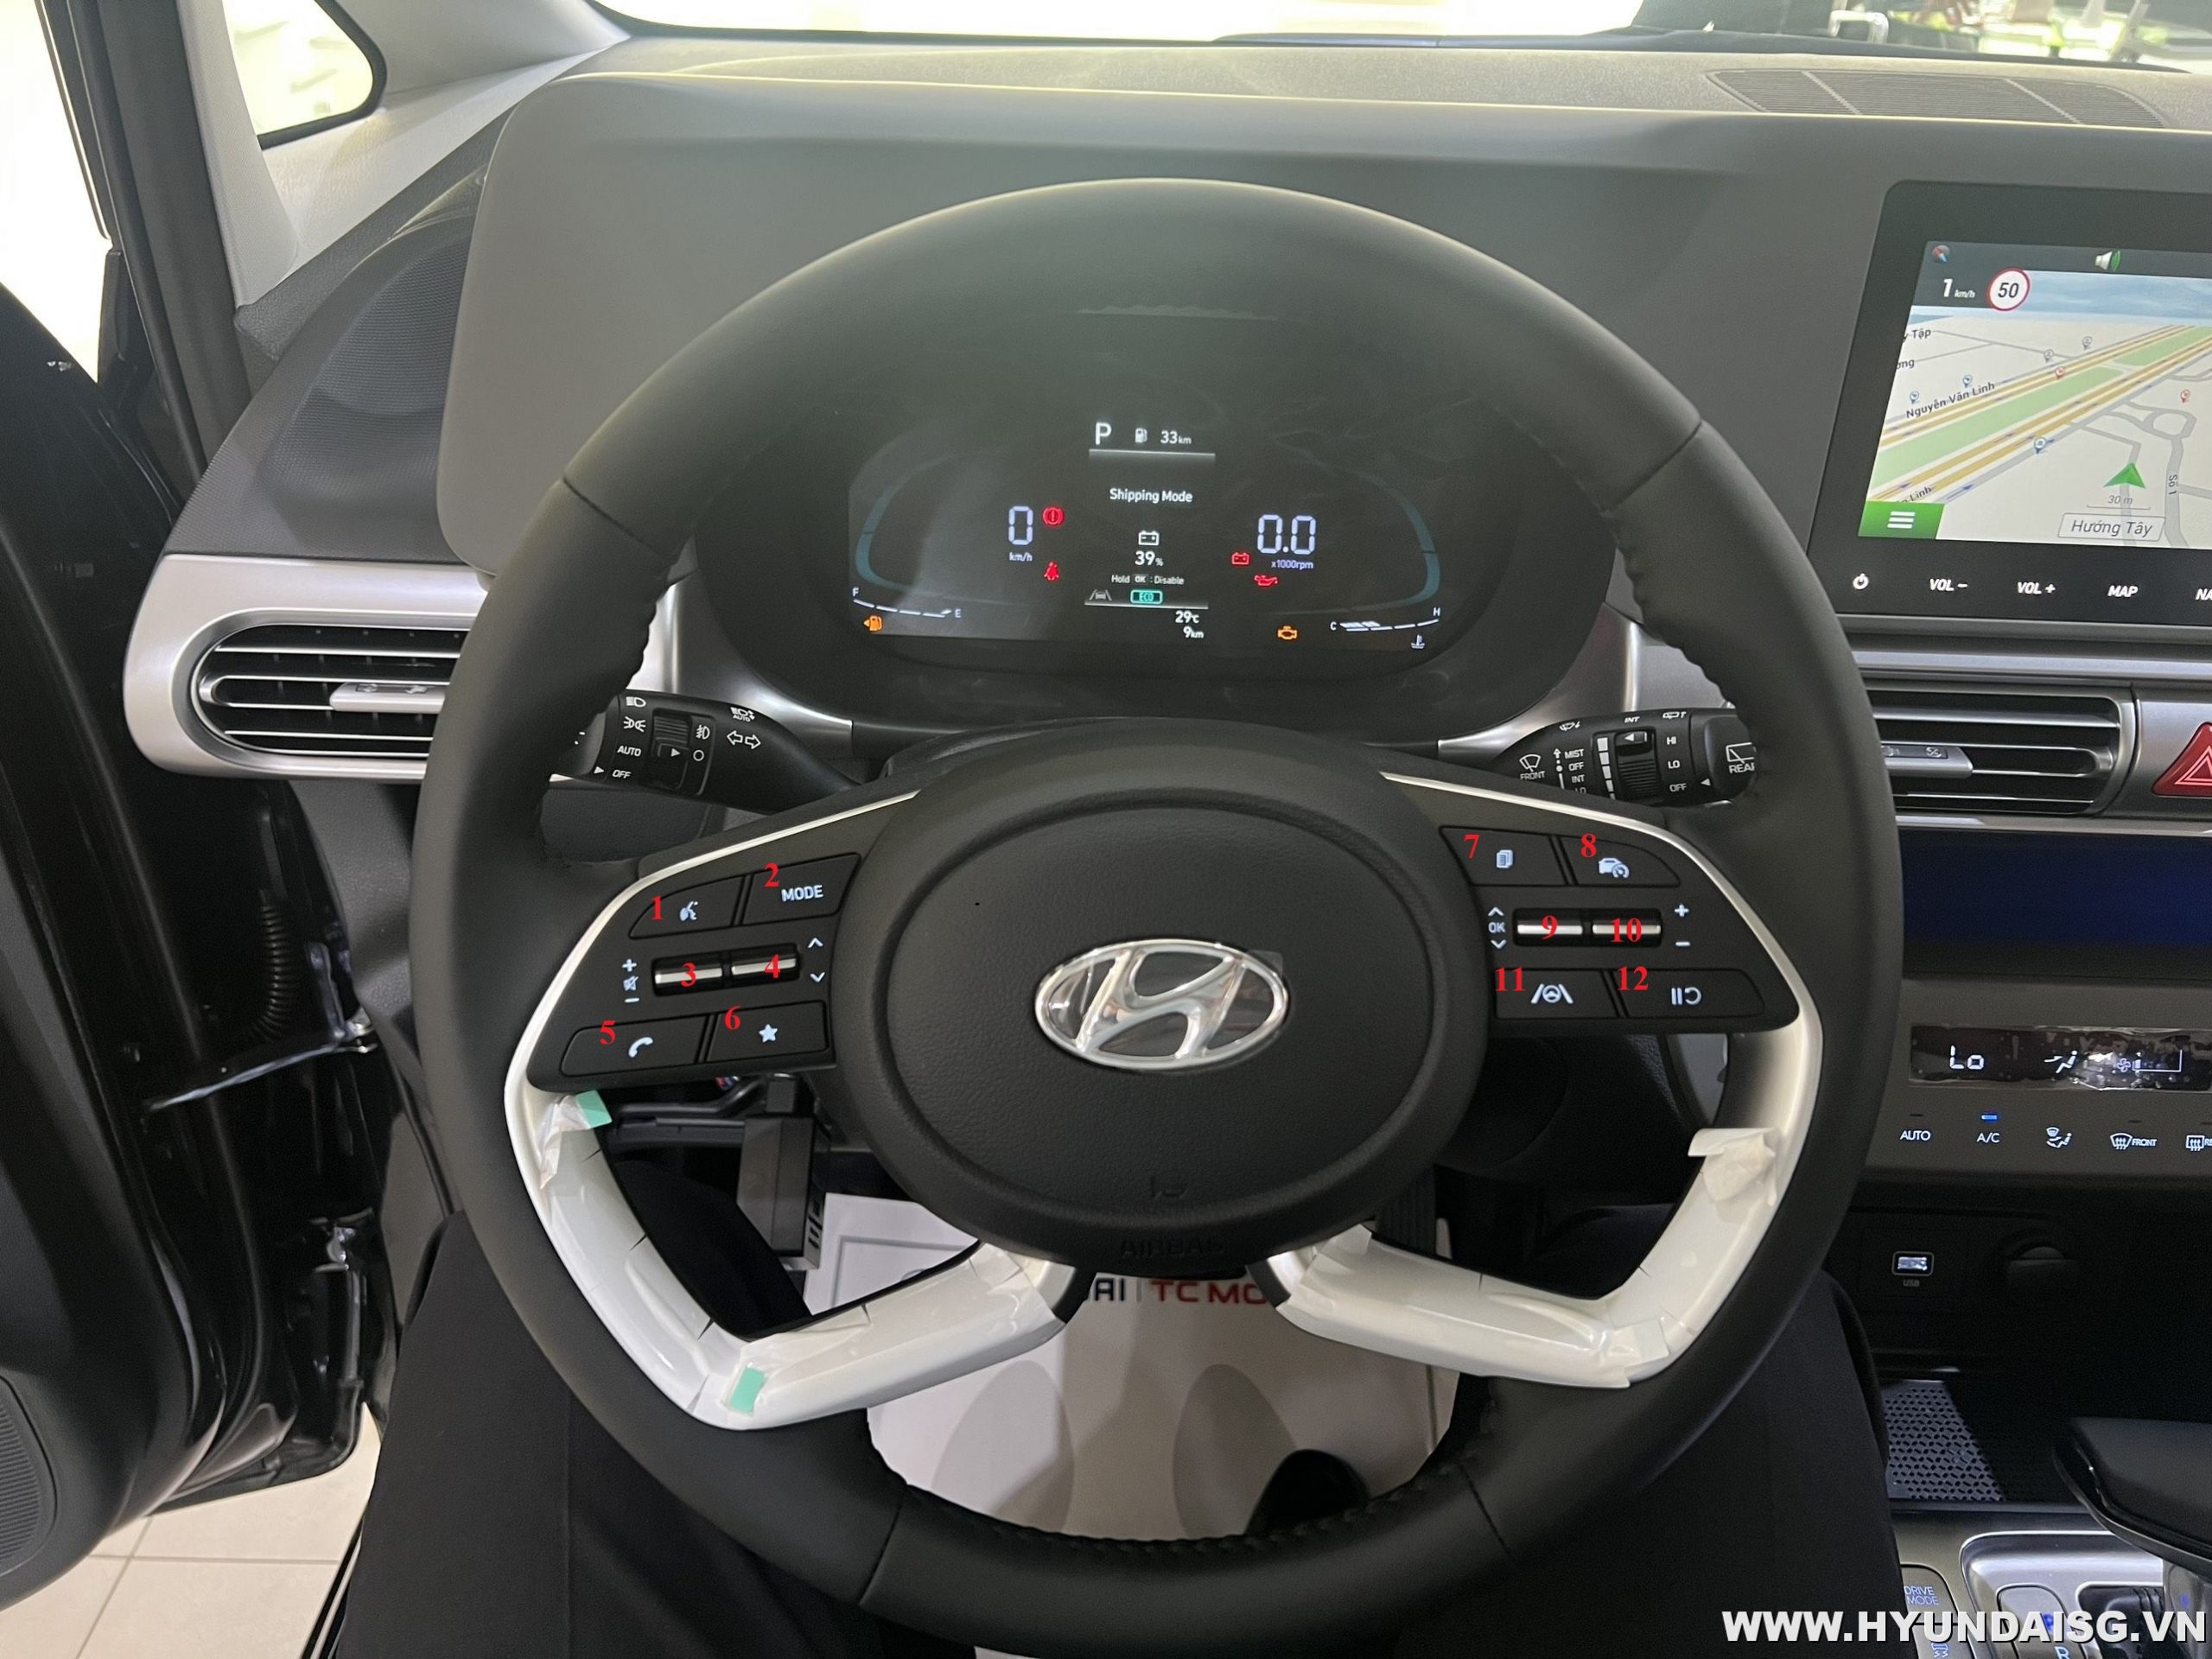 Hình Ảnh Hướng dẫn sử dụng xe Hyundai Stargazer cho người mới 30